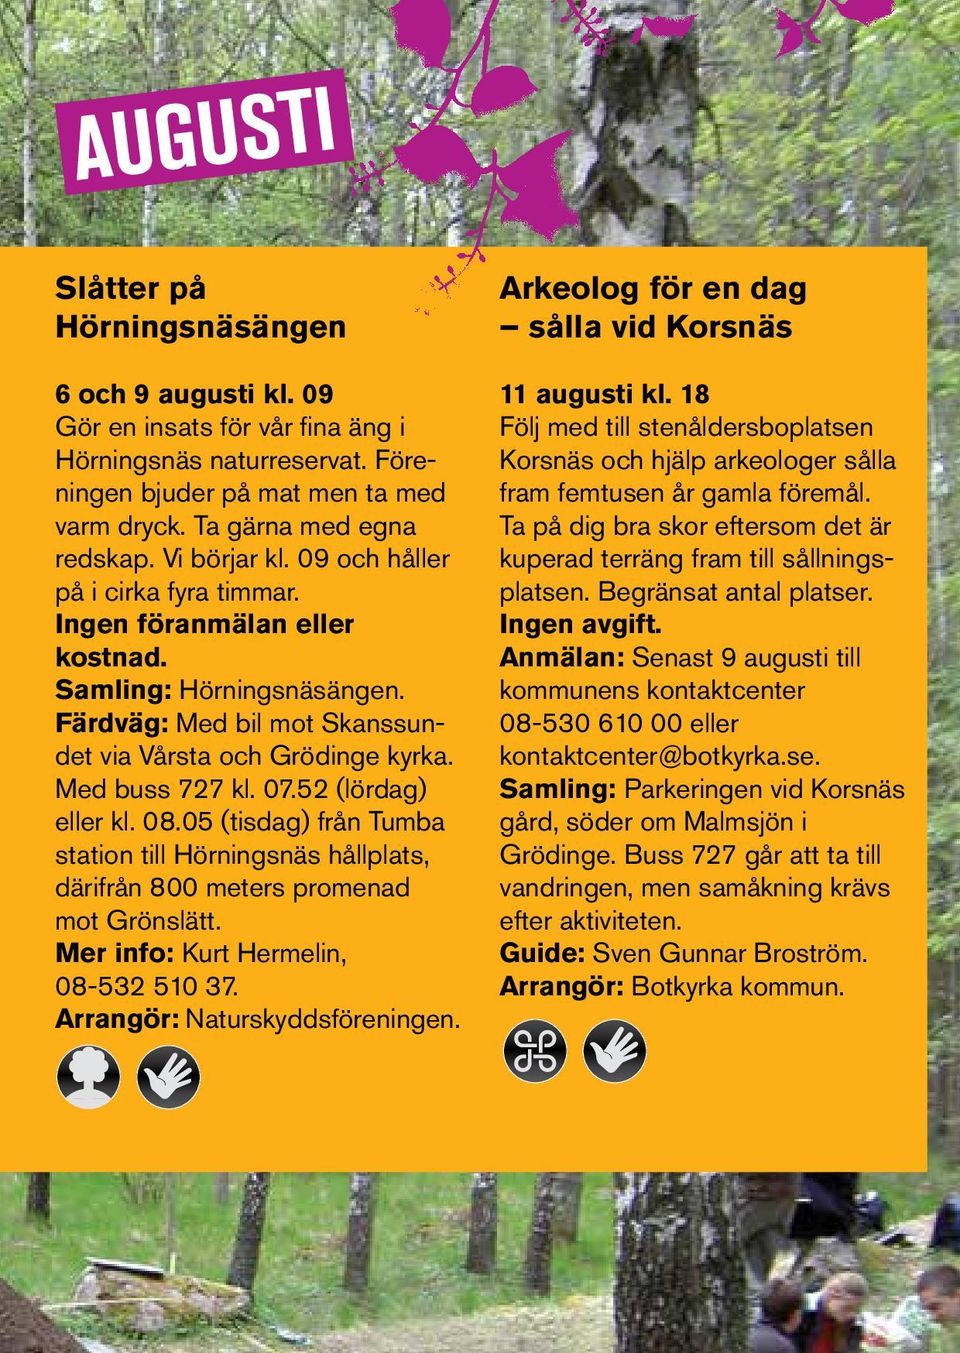 52 (lördag) eller kl. 08.05 (tisdag) från Tumba station till Hörningsnäs hållplats, därifrån 800 meters promenad mot Grönslätt. Mer info: Kurt Hermelin, 08-532 510 37. Arrangör: Naturskyddsföreningen.